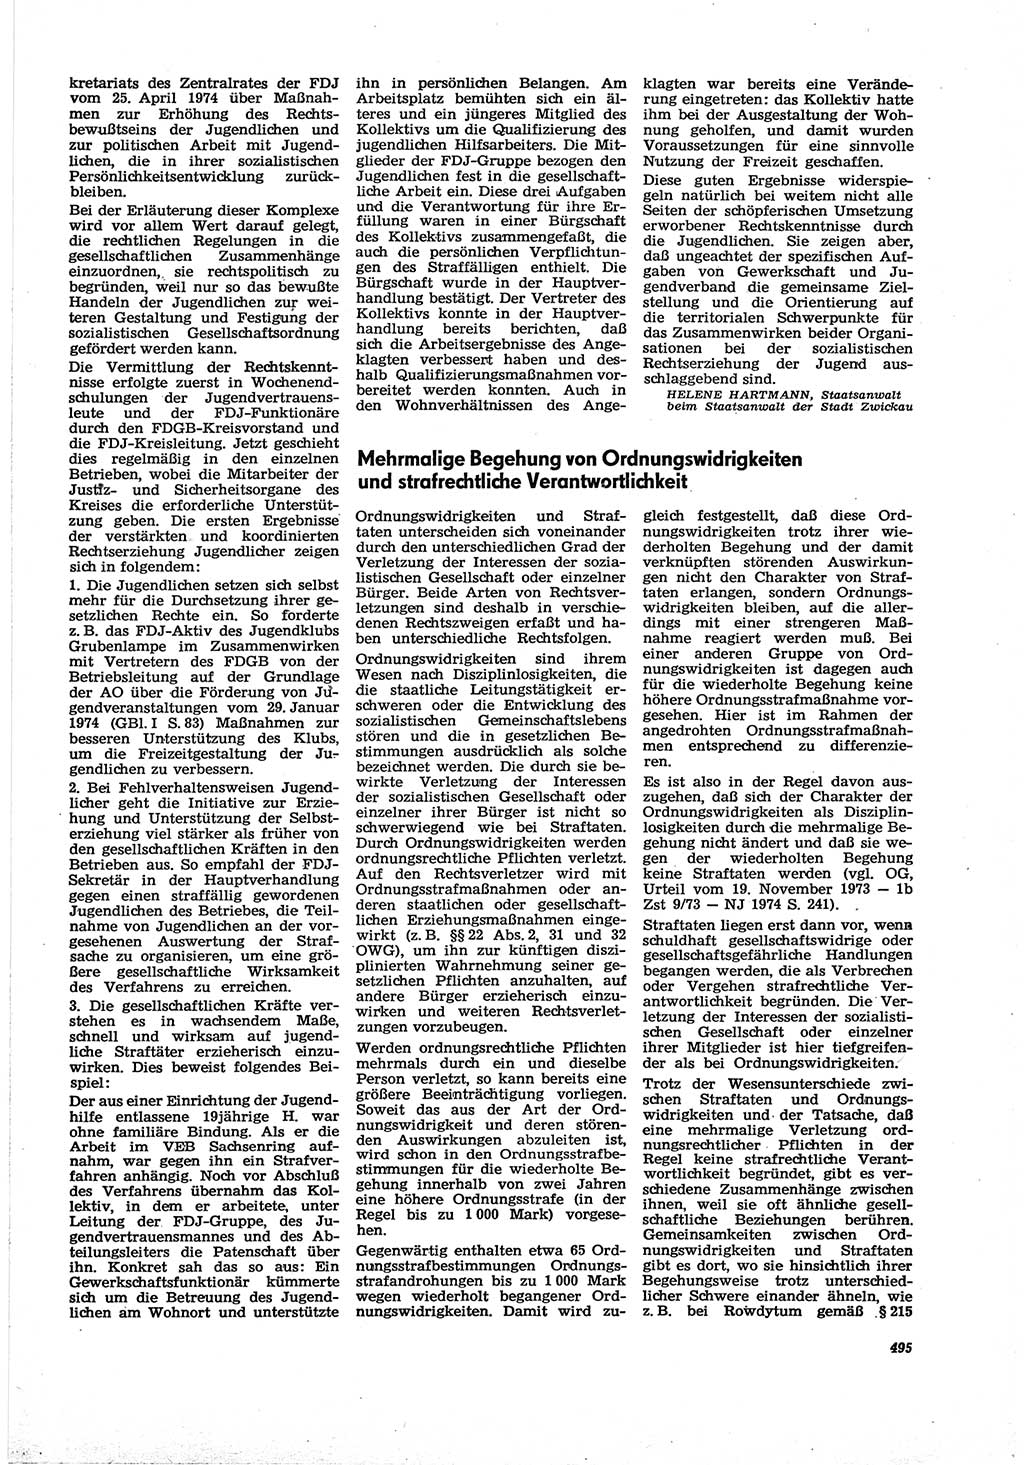 Neue Justiz (NJ), Zeitschrift für Recht und Rechtswissenschaft [Deutsche Demokratische Republik (DDR)], 30. Jahrgang 1976, Seite 495 (NJ DDR 1976, S. 495)